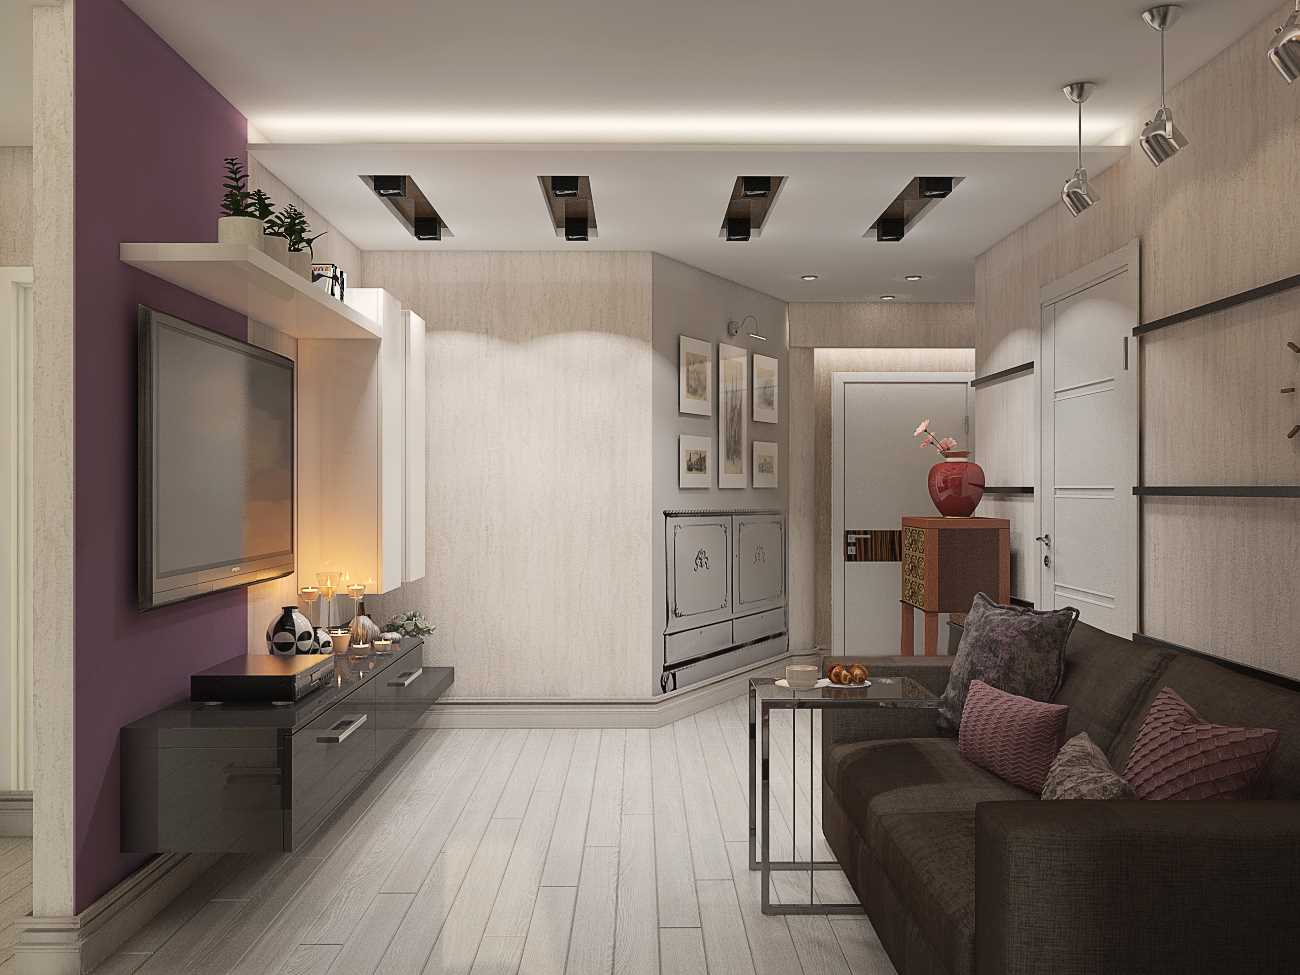 مثال على تصميم جميل لشقة حديثة من 70 متر مربع